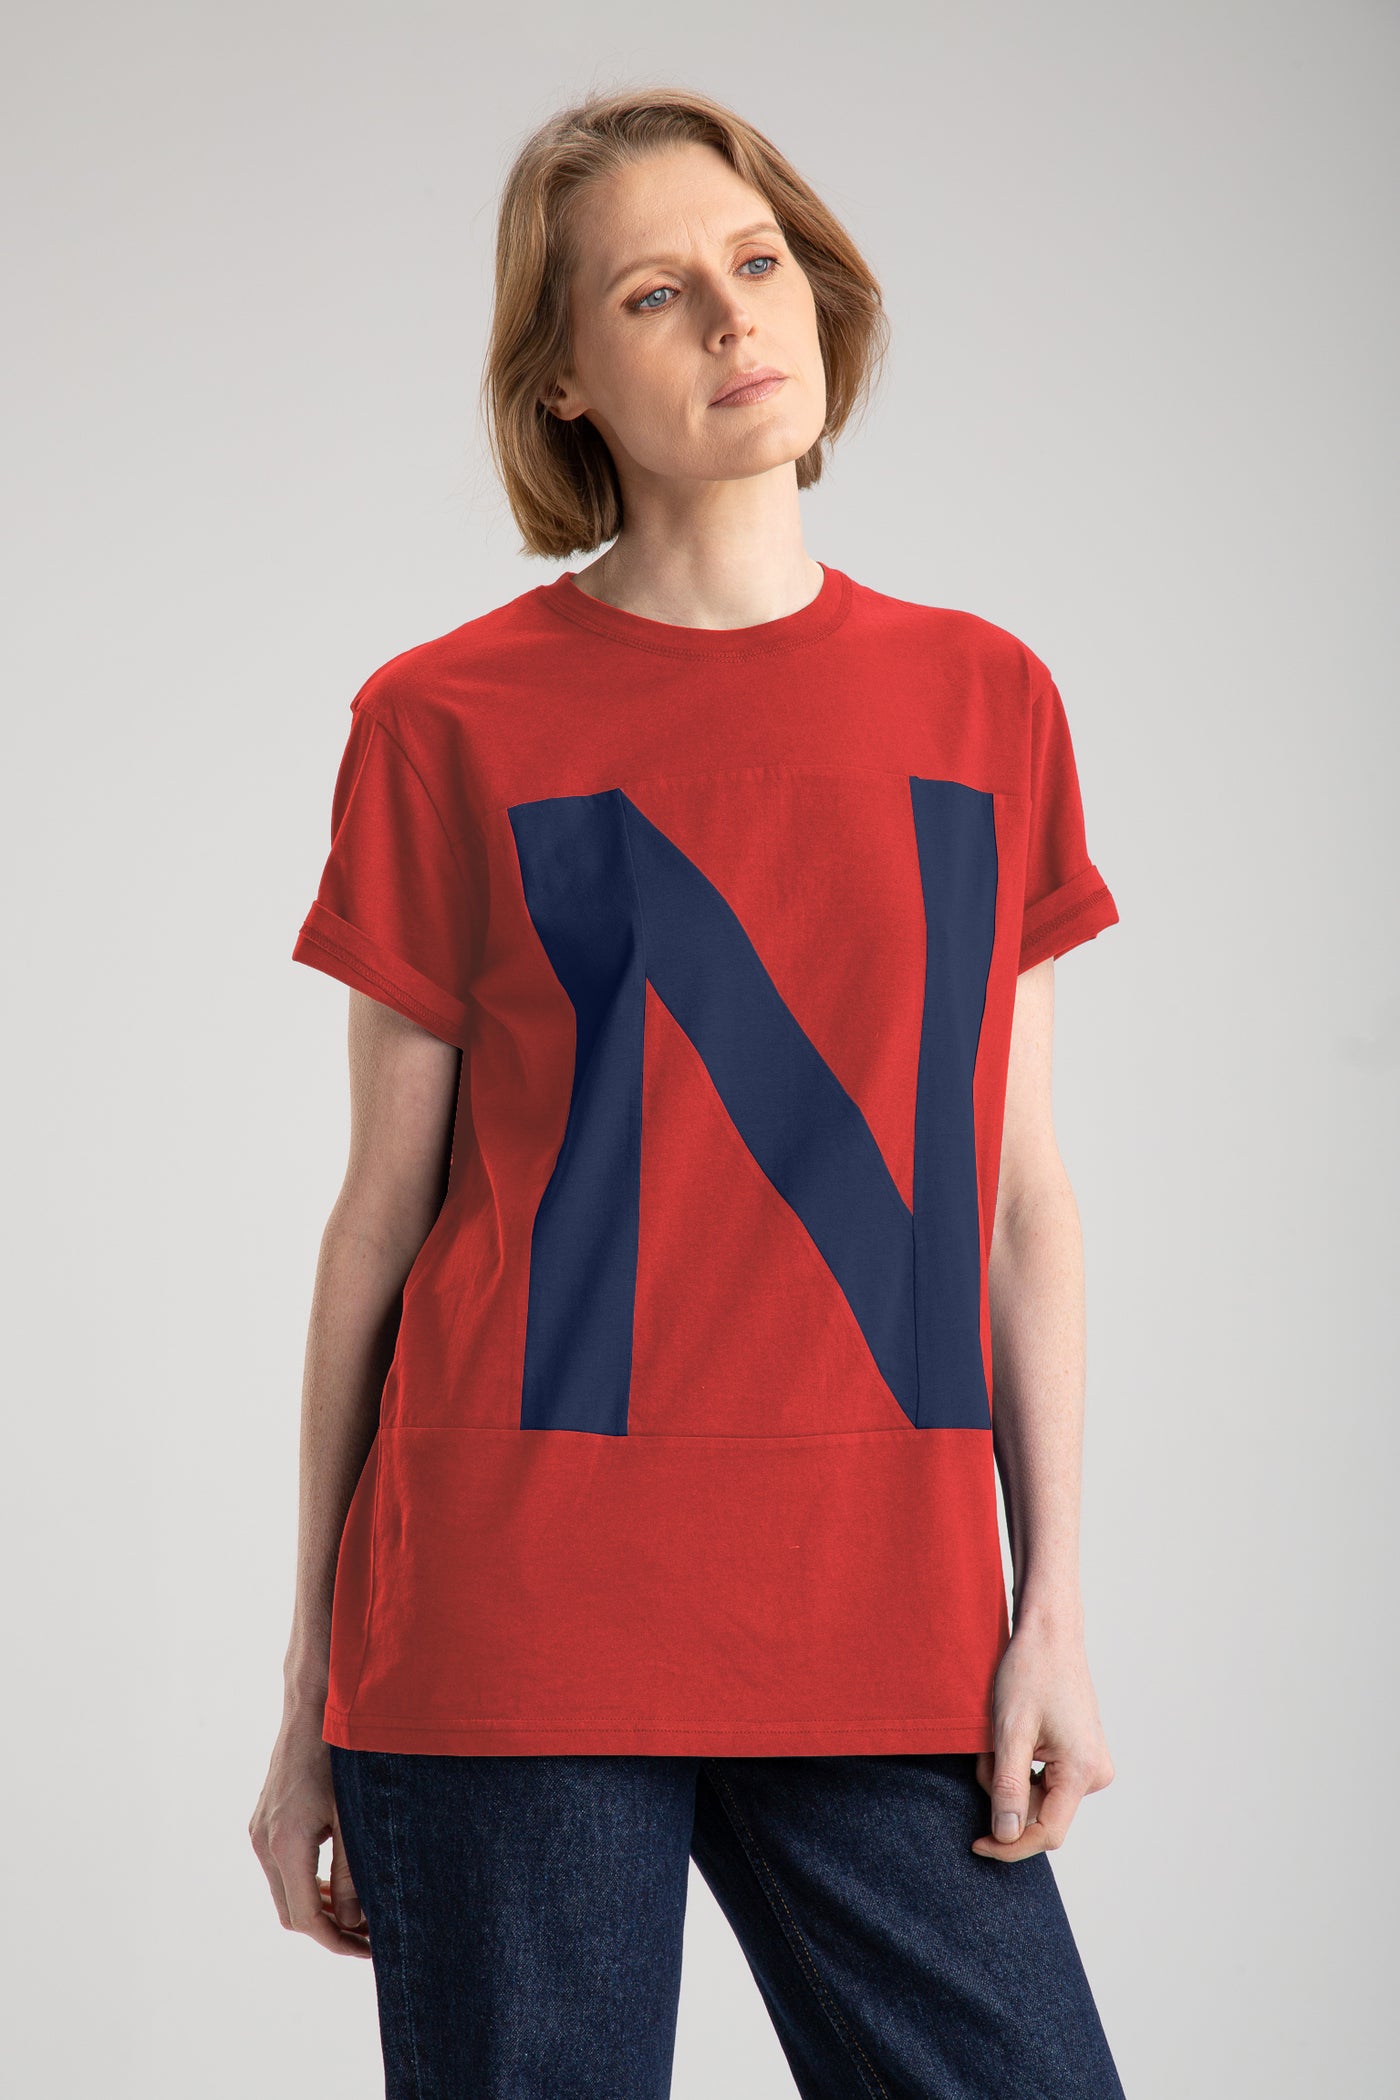 Up-Shirt für Damen - N Motiv | Rot, Blau